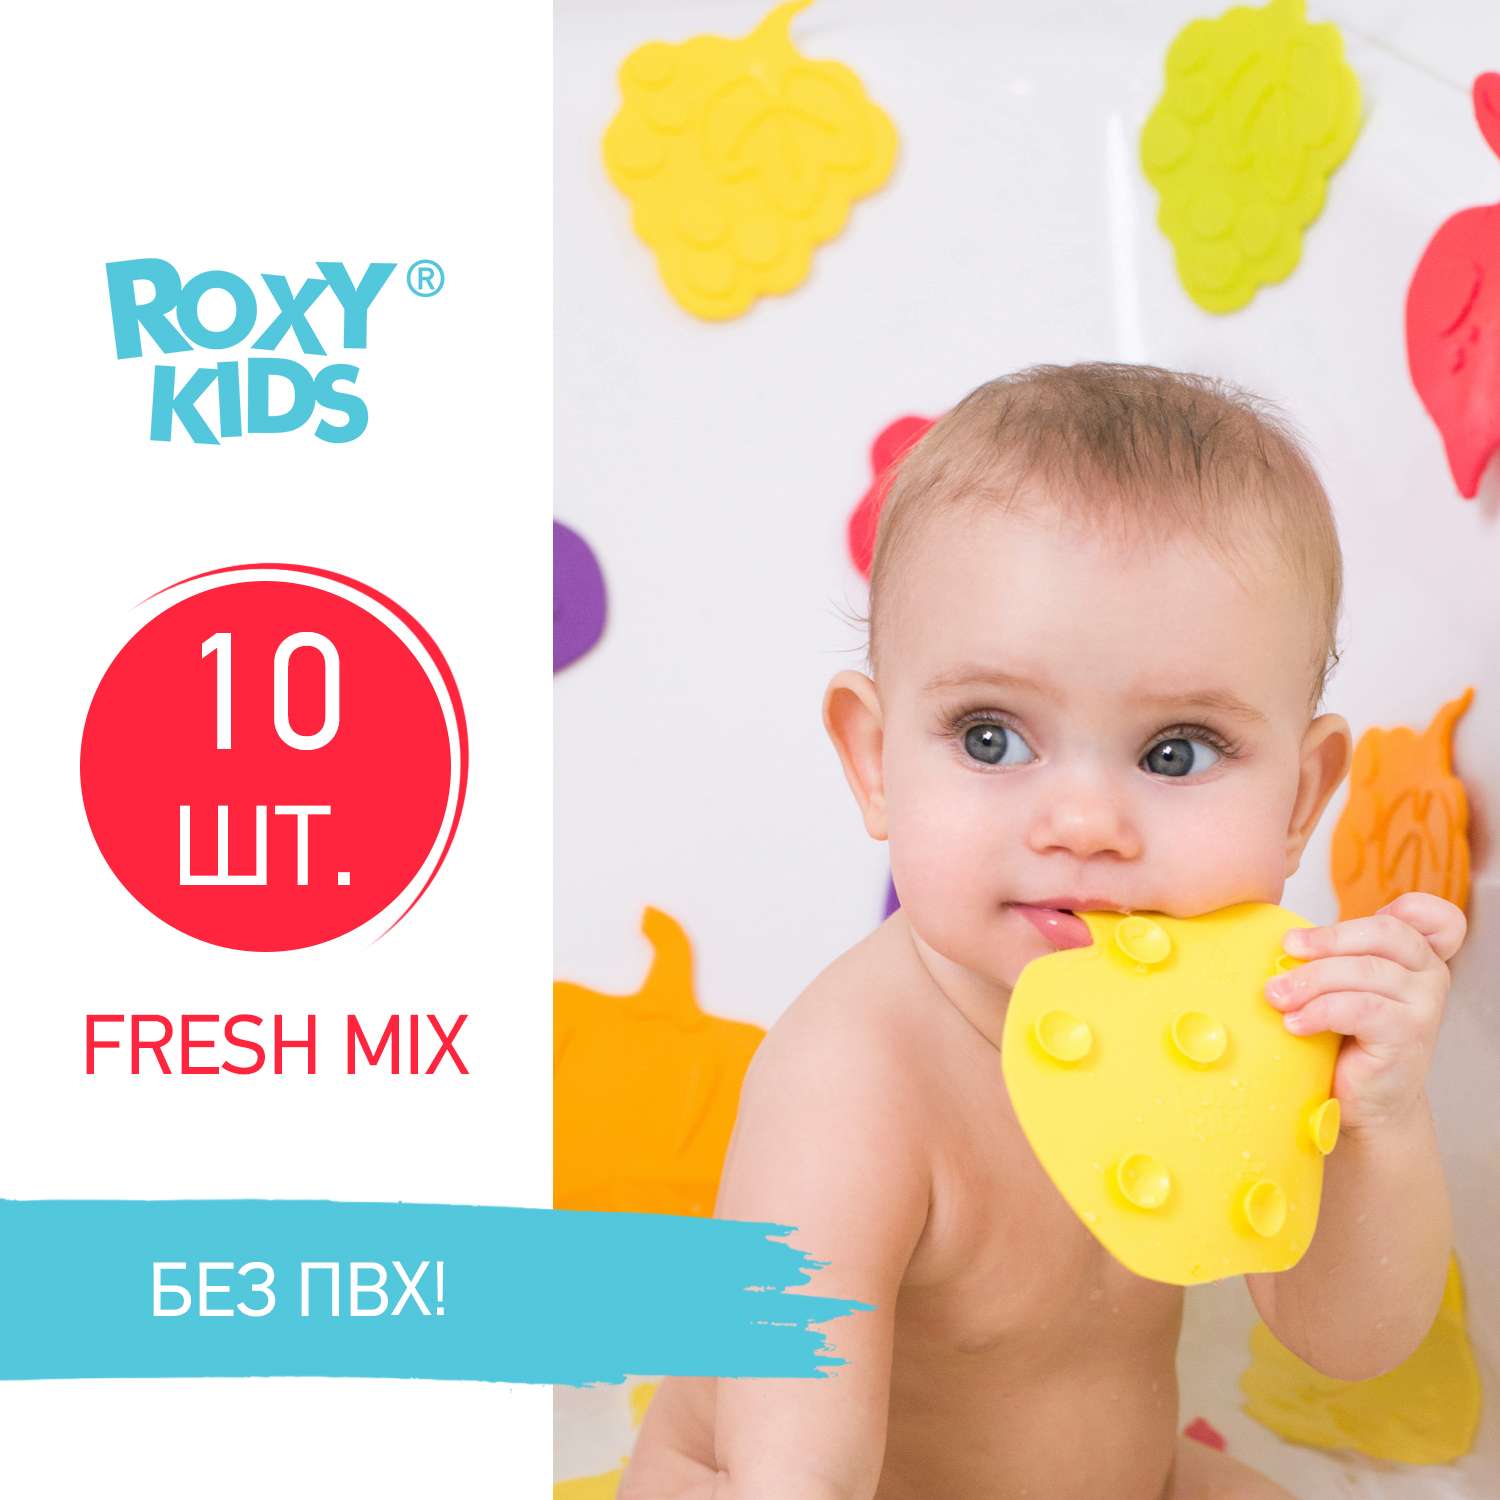 Мини-коврики детские ROXY-KIDS для ванной противоскользящие fresh mix 10 шт цвета в ассортименте - фото 2